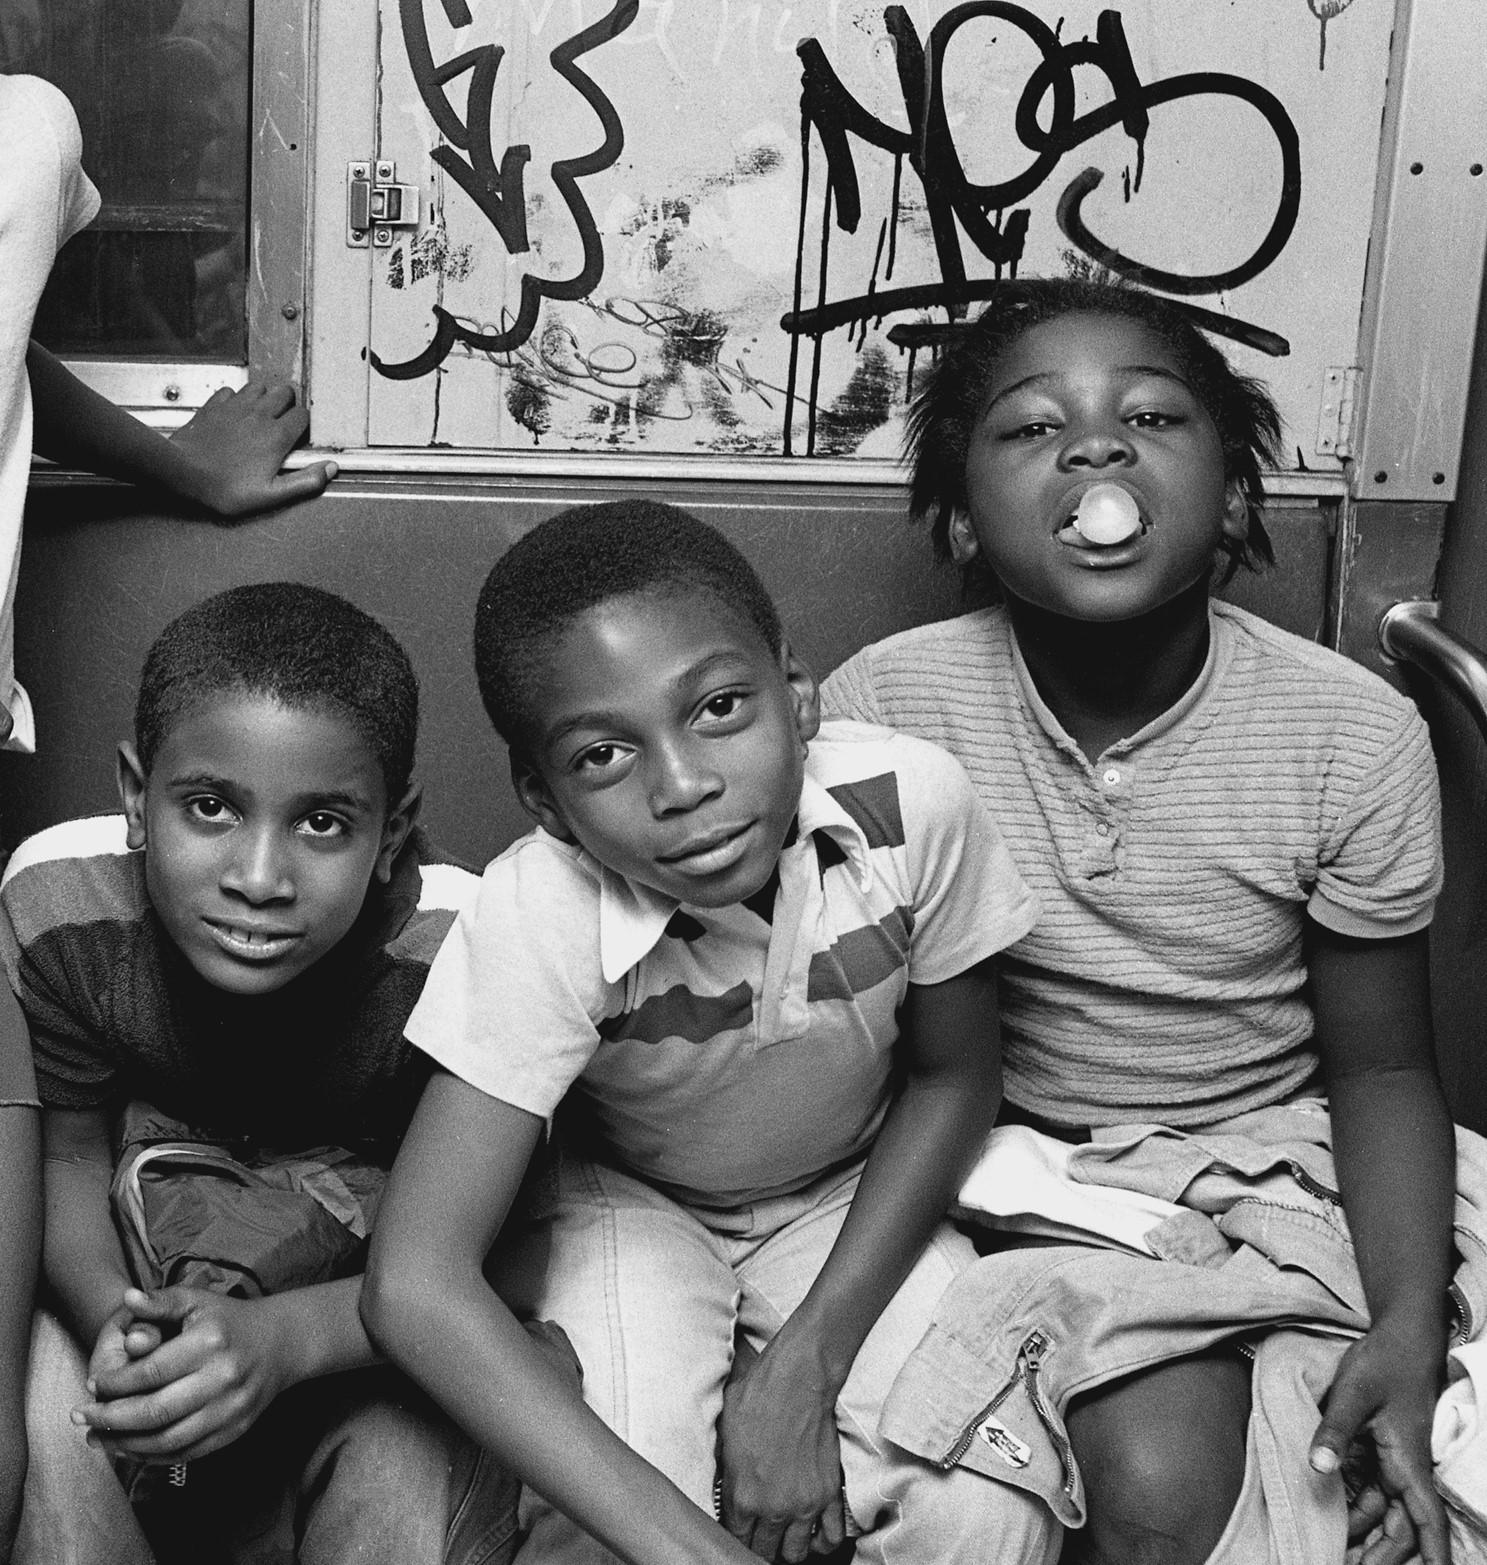 Subway 30, NYC, années 1980, New York  Ville, enfants, photographie, métro, édition limitée - Réalisme Photograph par John Conn